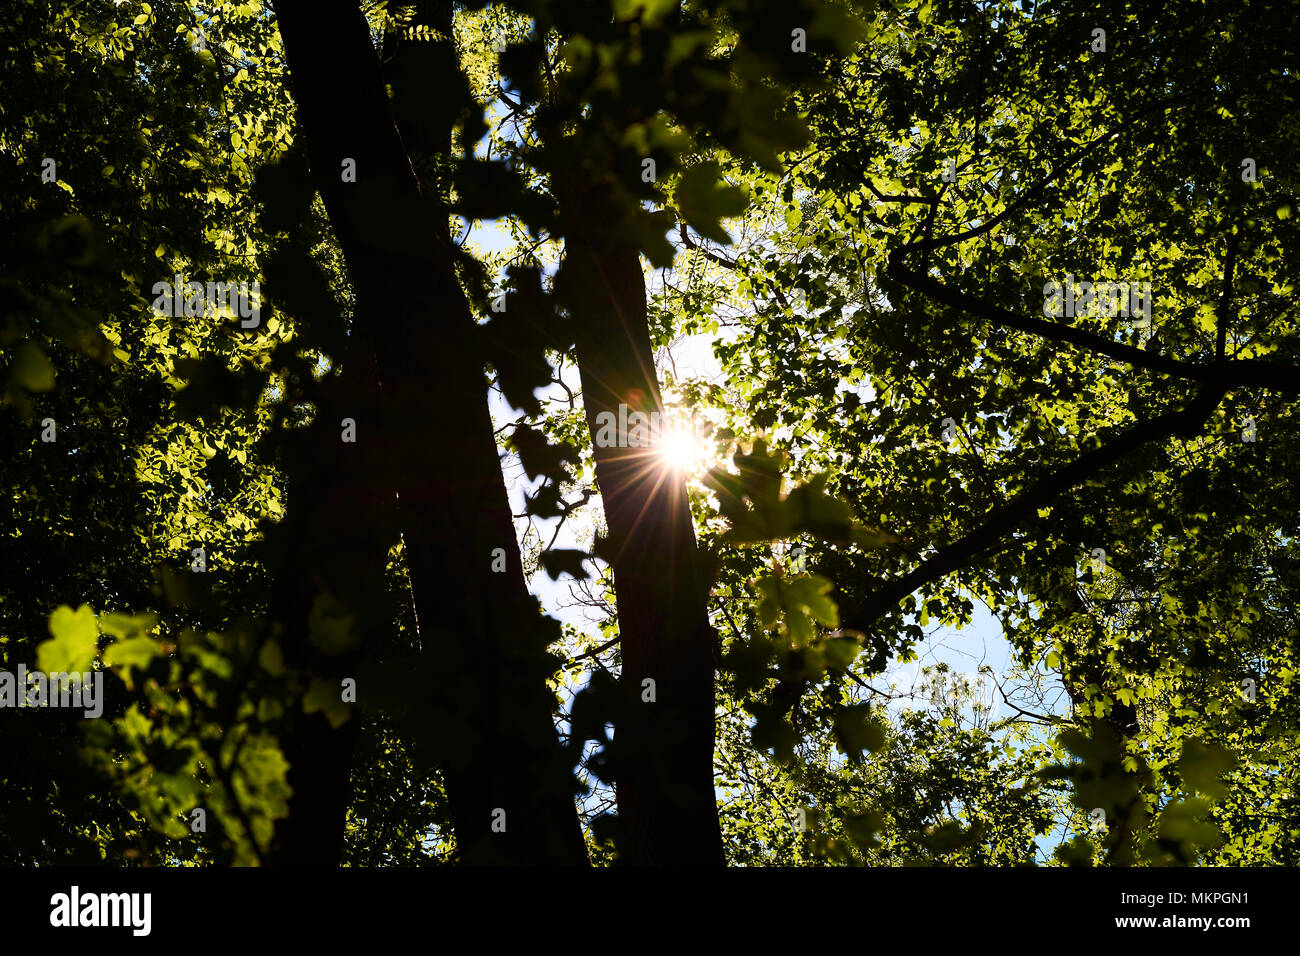 Treetop con hojas y el sol brilla a través de las ramas, en un brillante día de primavera o verano Foto de stock